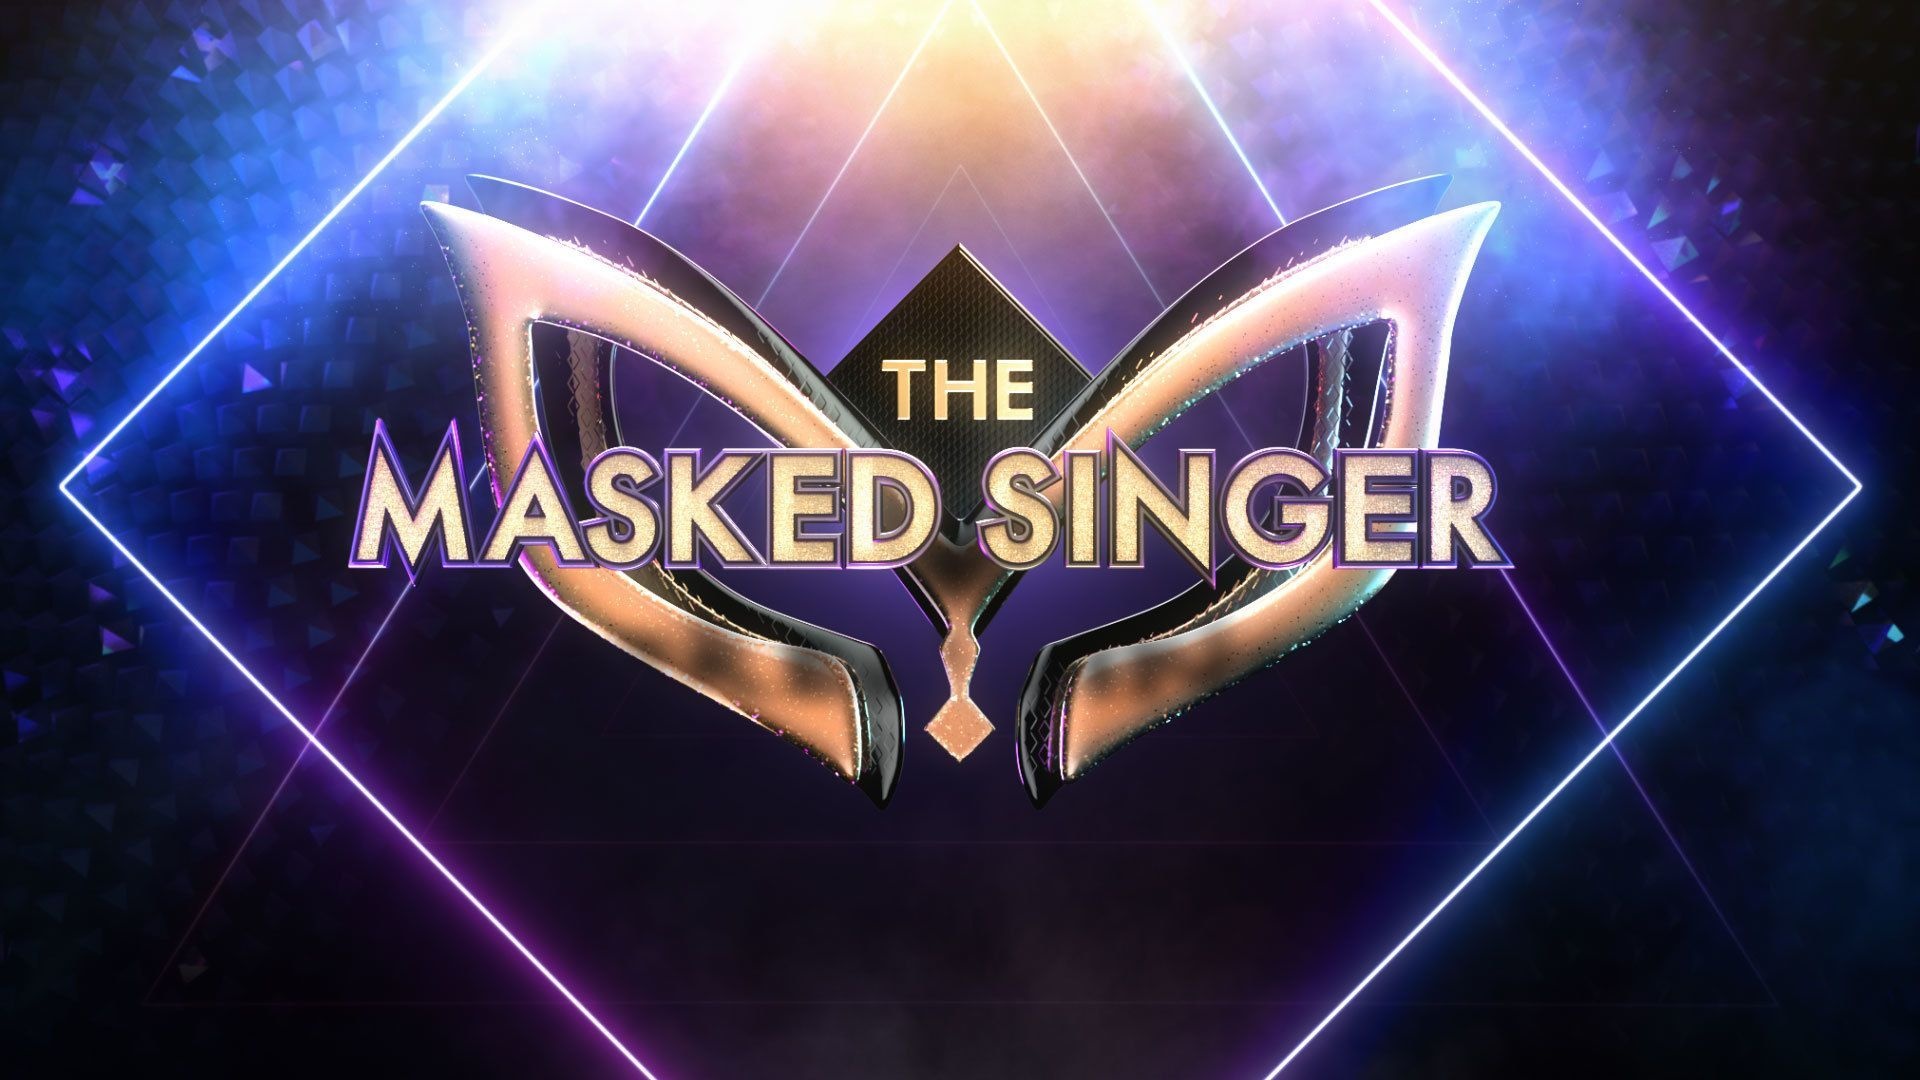 The Masked Singer, Alena Marenfeld, Celebrity Singers, 1920x1080 Full HD Desktop